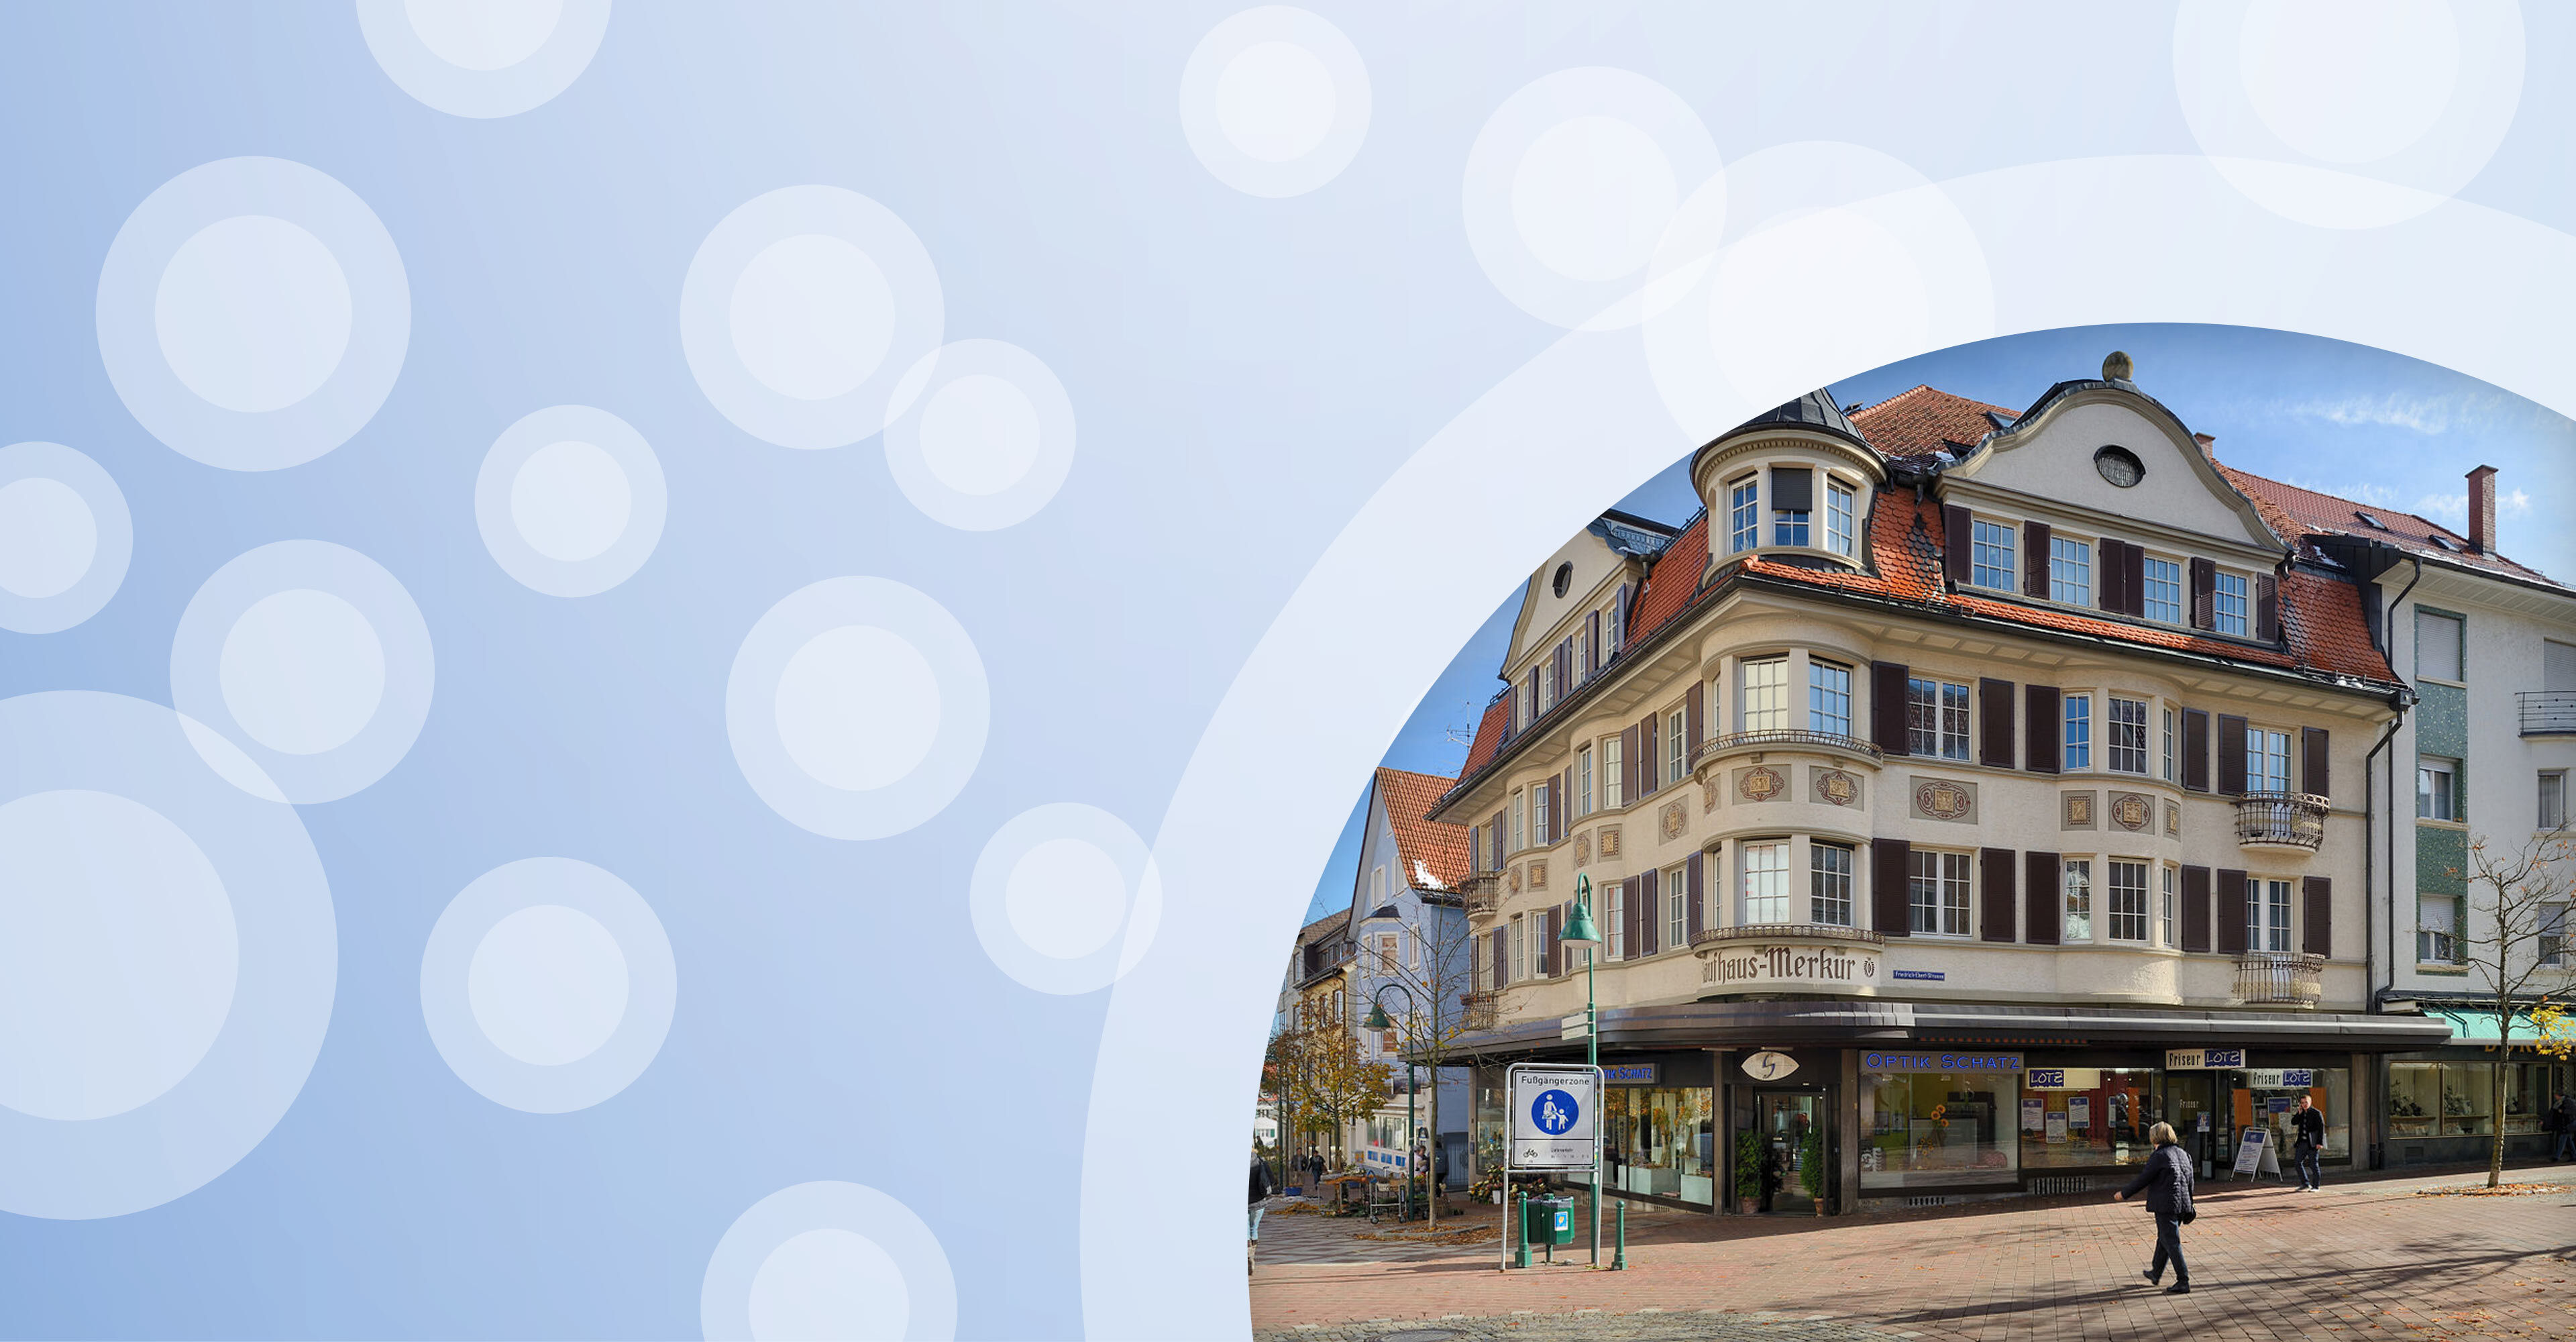 Regionalgrafik in hellblau mit halbtransparenten weißen Kreisen und Foto von historischem Gebäude in Villingen-Schwenningen